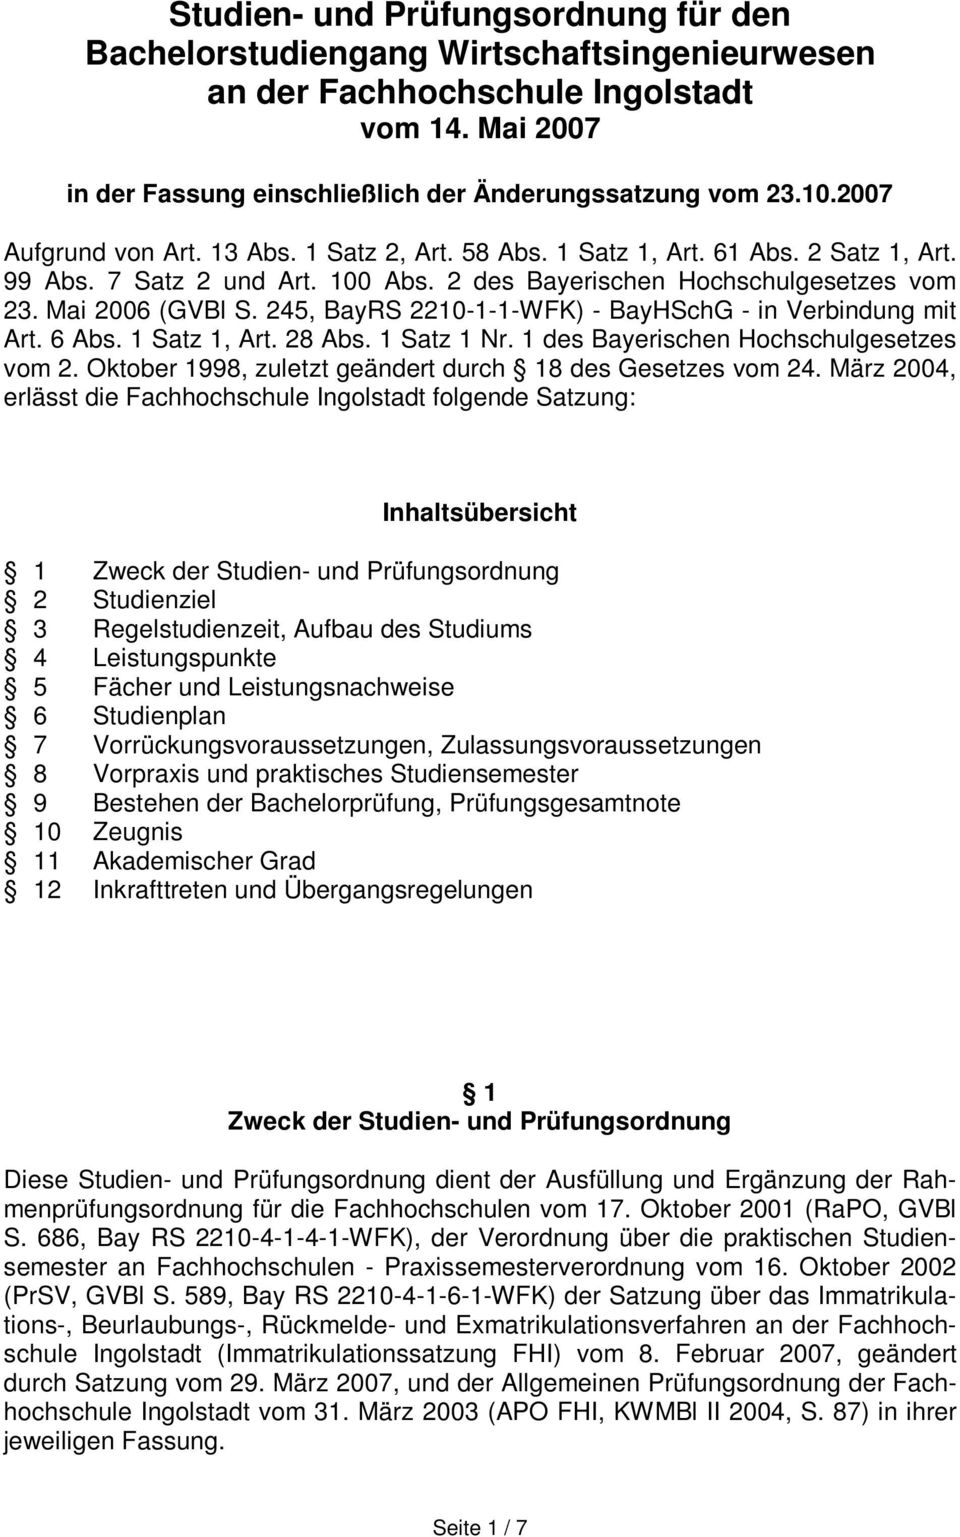 245, BayRS 2210-1-1-WFK) - BayHSchG - in Verbindung mit Art. 6 Abs. 1 Satz 1, Art. 28 Abs. 1 Satz 1 Nr. 1 des Bayerischen Hochschulgesetzes vom 2.